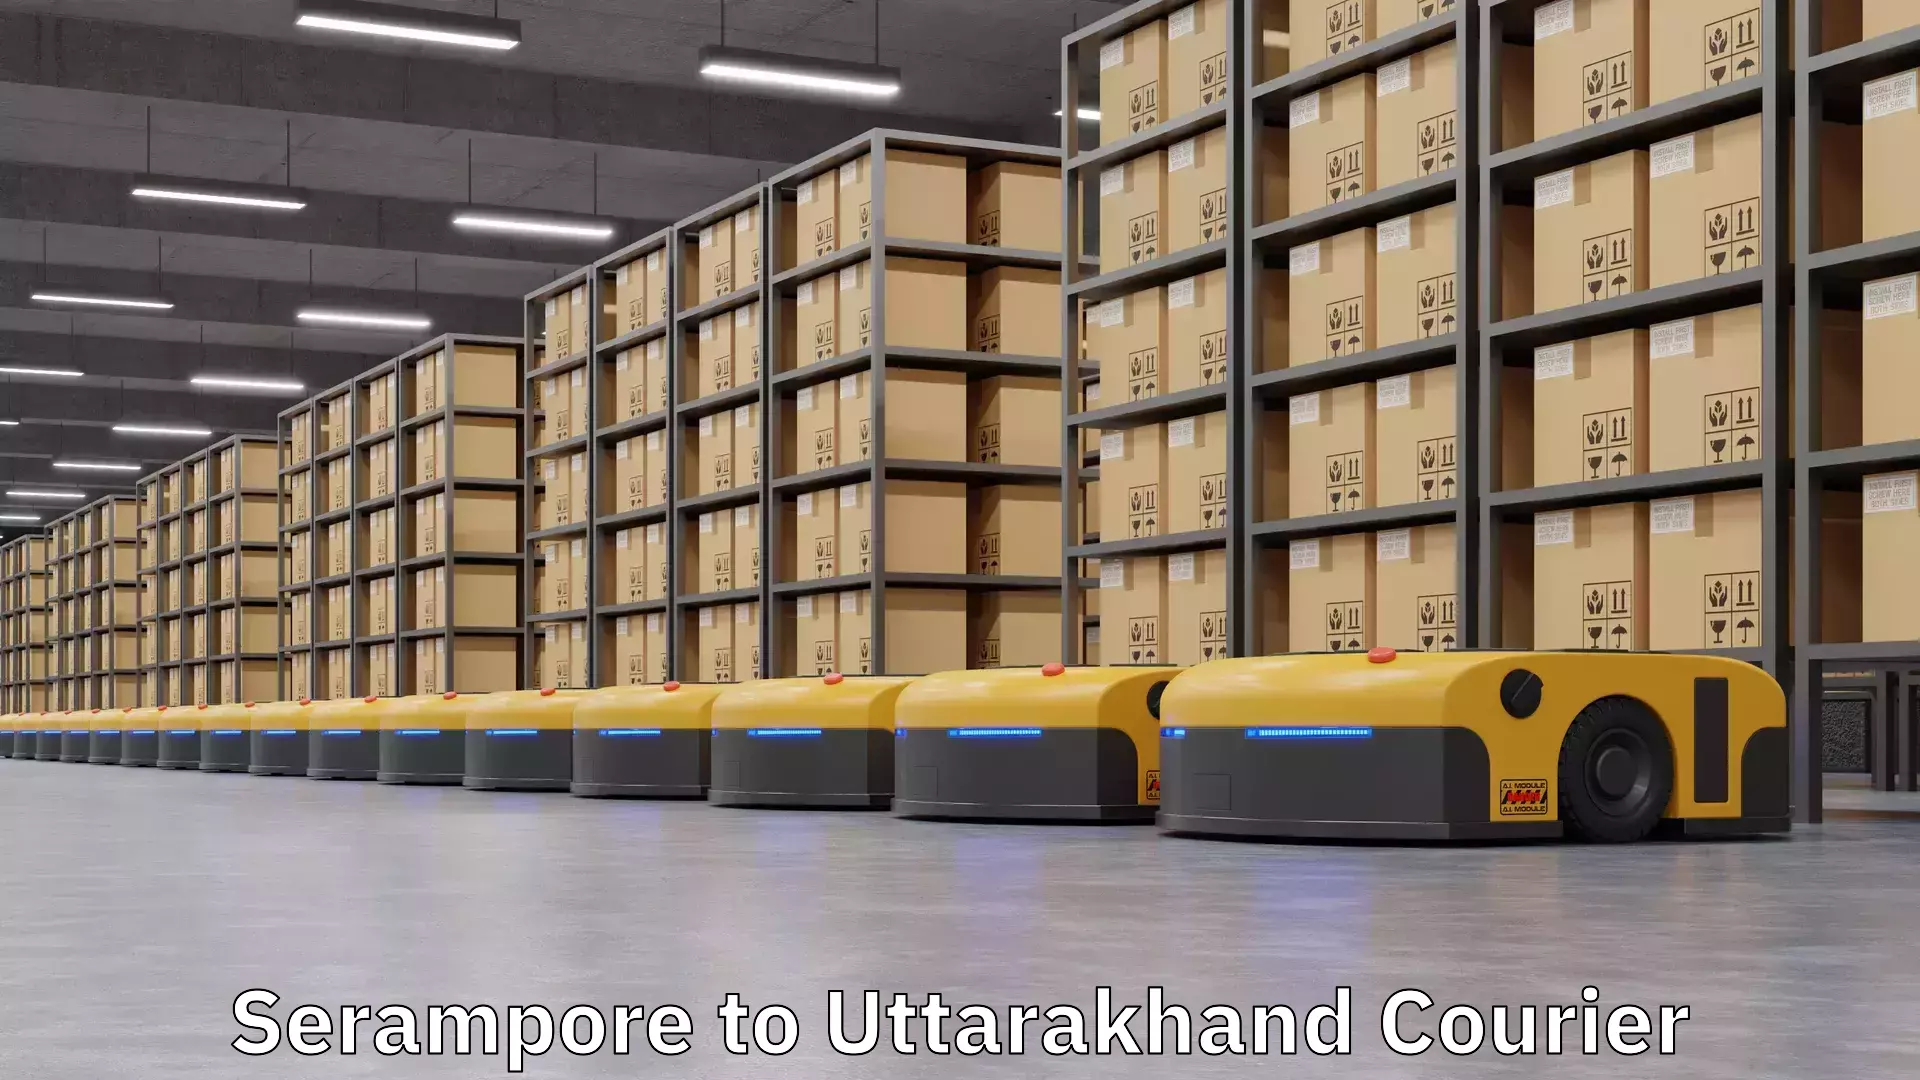 Urgent courier needs in Serampore to Uttarakhand